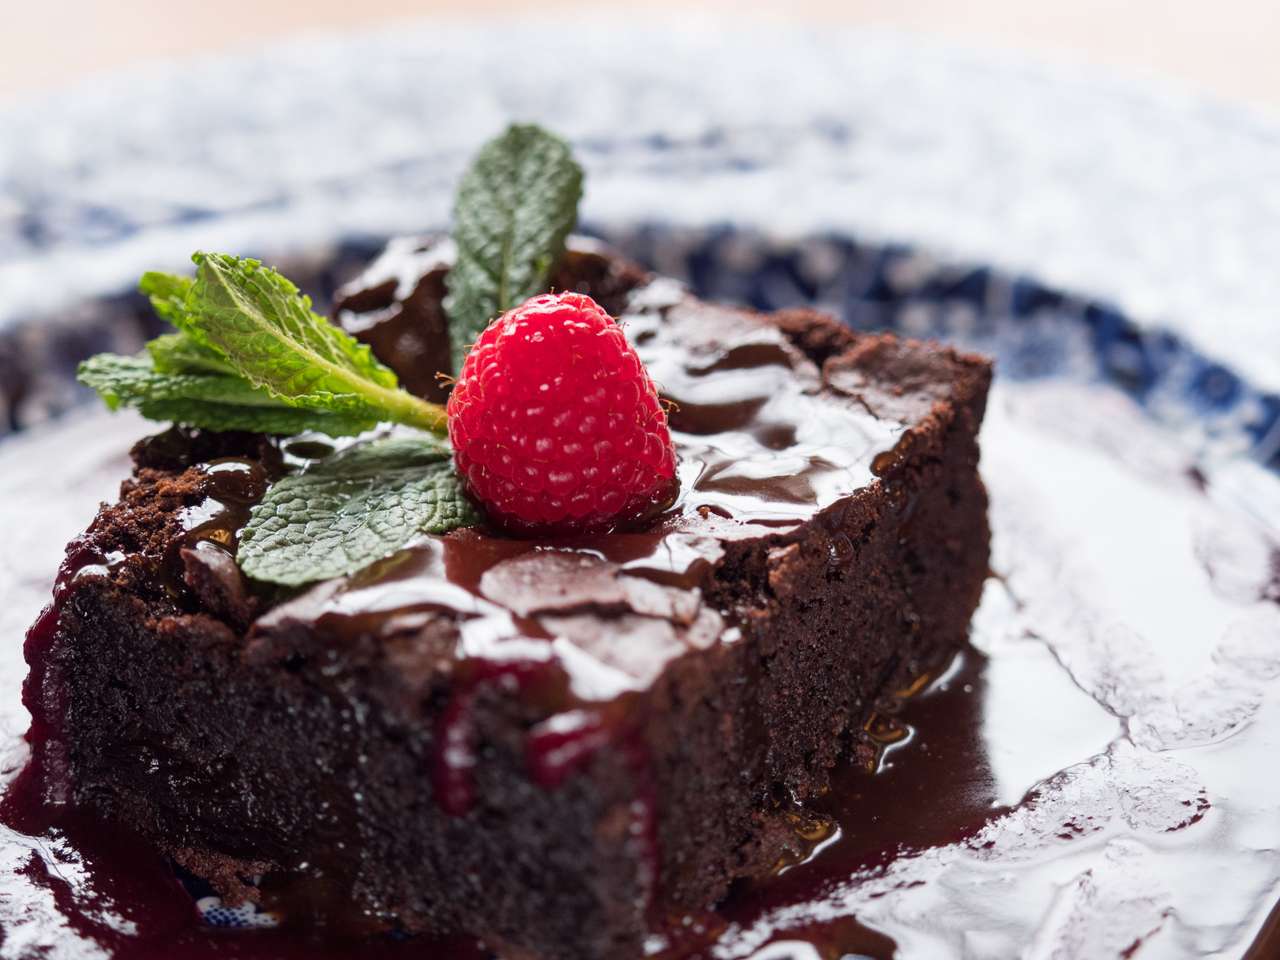 Bliska plasterek ciasto czekoladowe serwowane na talerzu z sosem czekoladowym. Malinowe owoce i liście mięty na górze. Naturalne okno światła. puzzle online